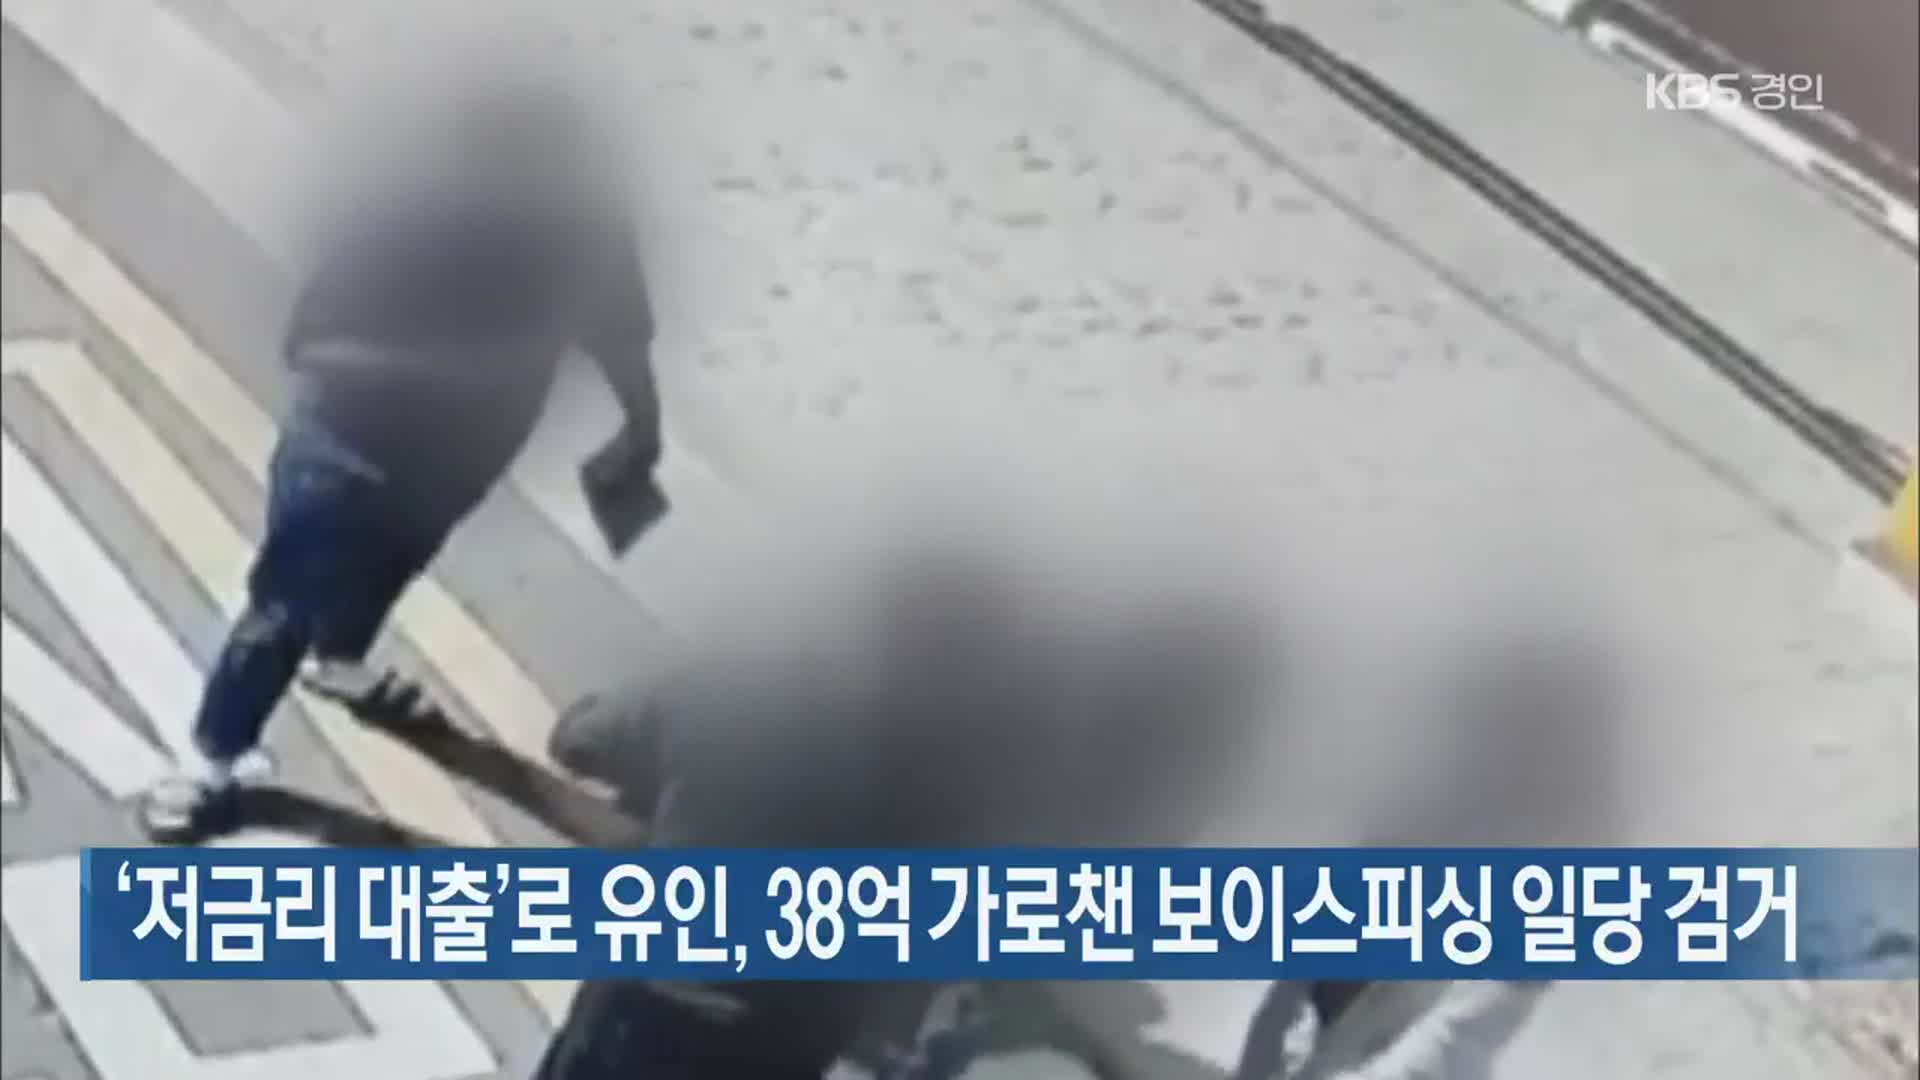 ‘저금리 대출’로 유인, 38억 가로챈 보이스피싱 일당 검거